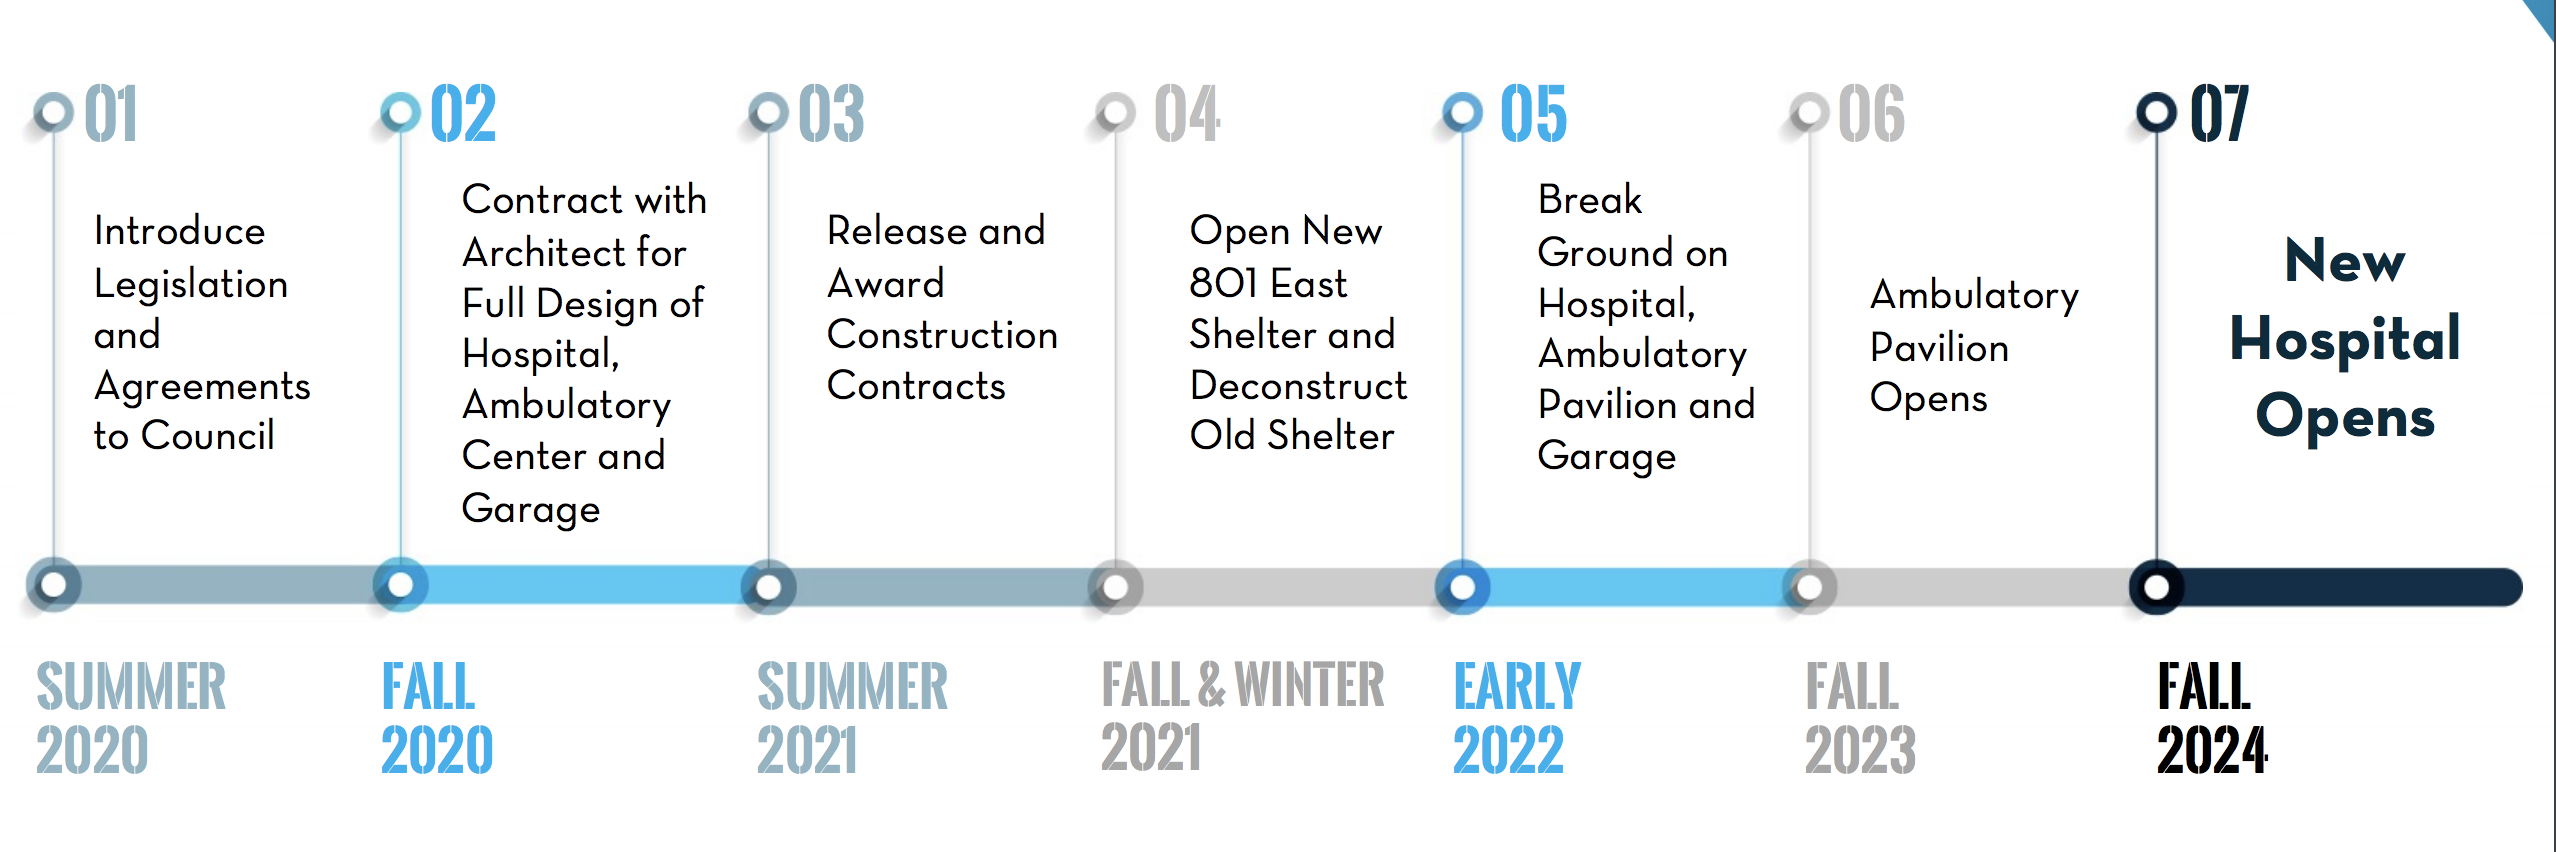 Timeline for Hospitals